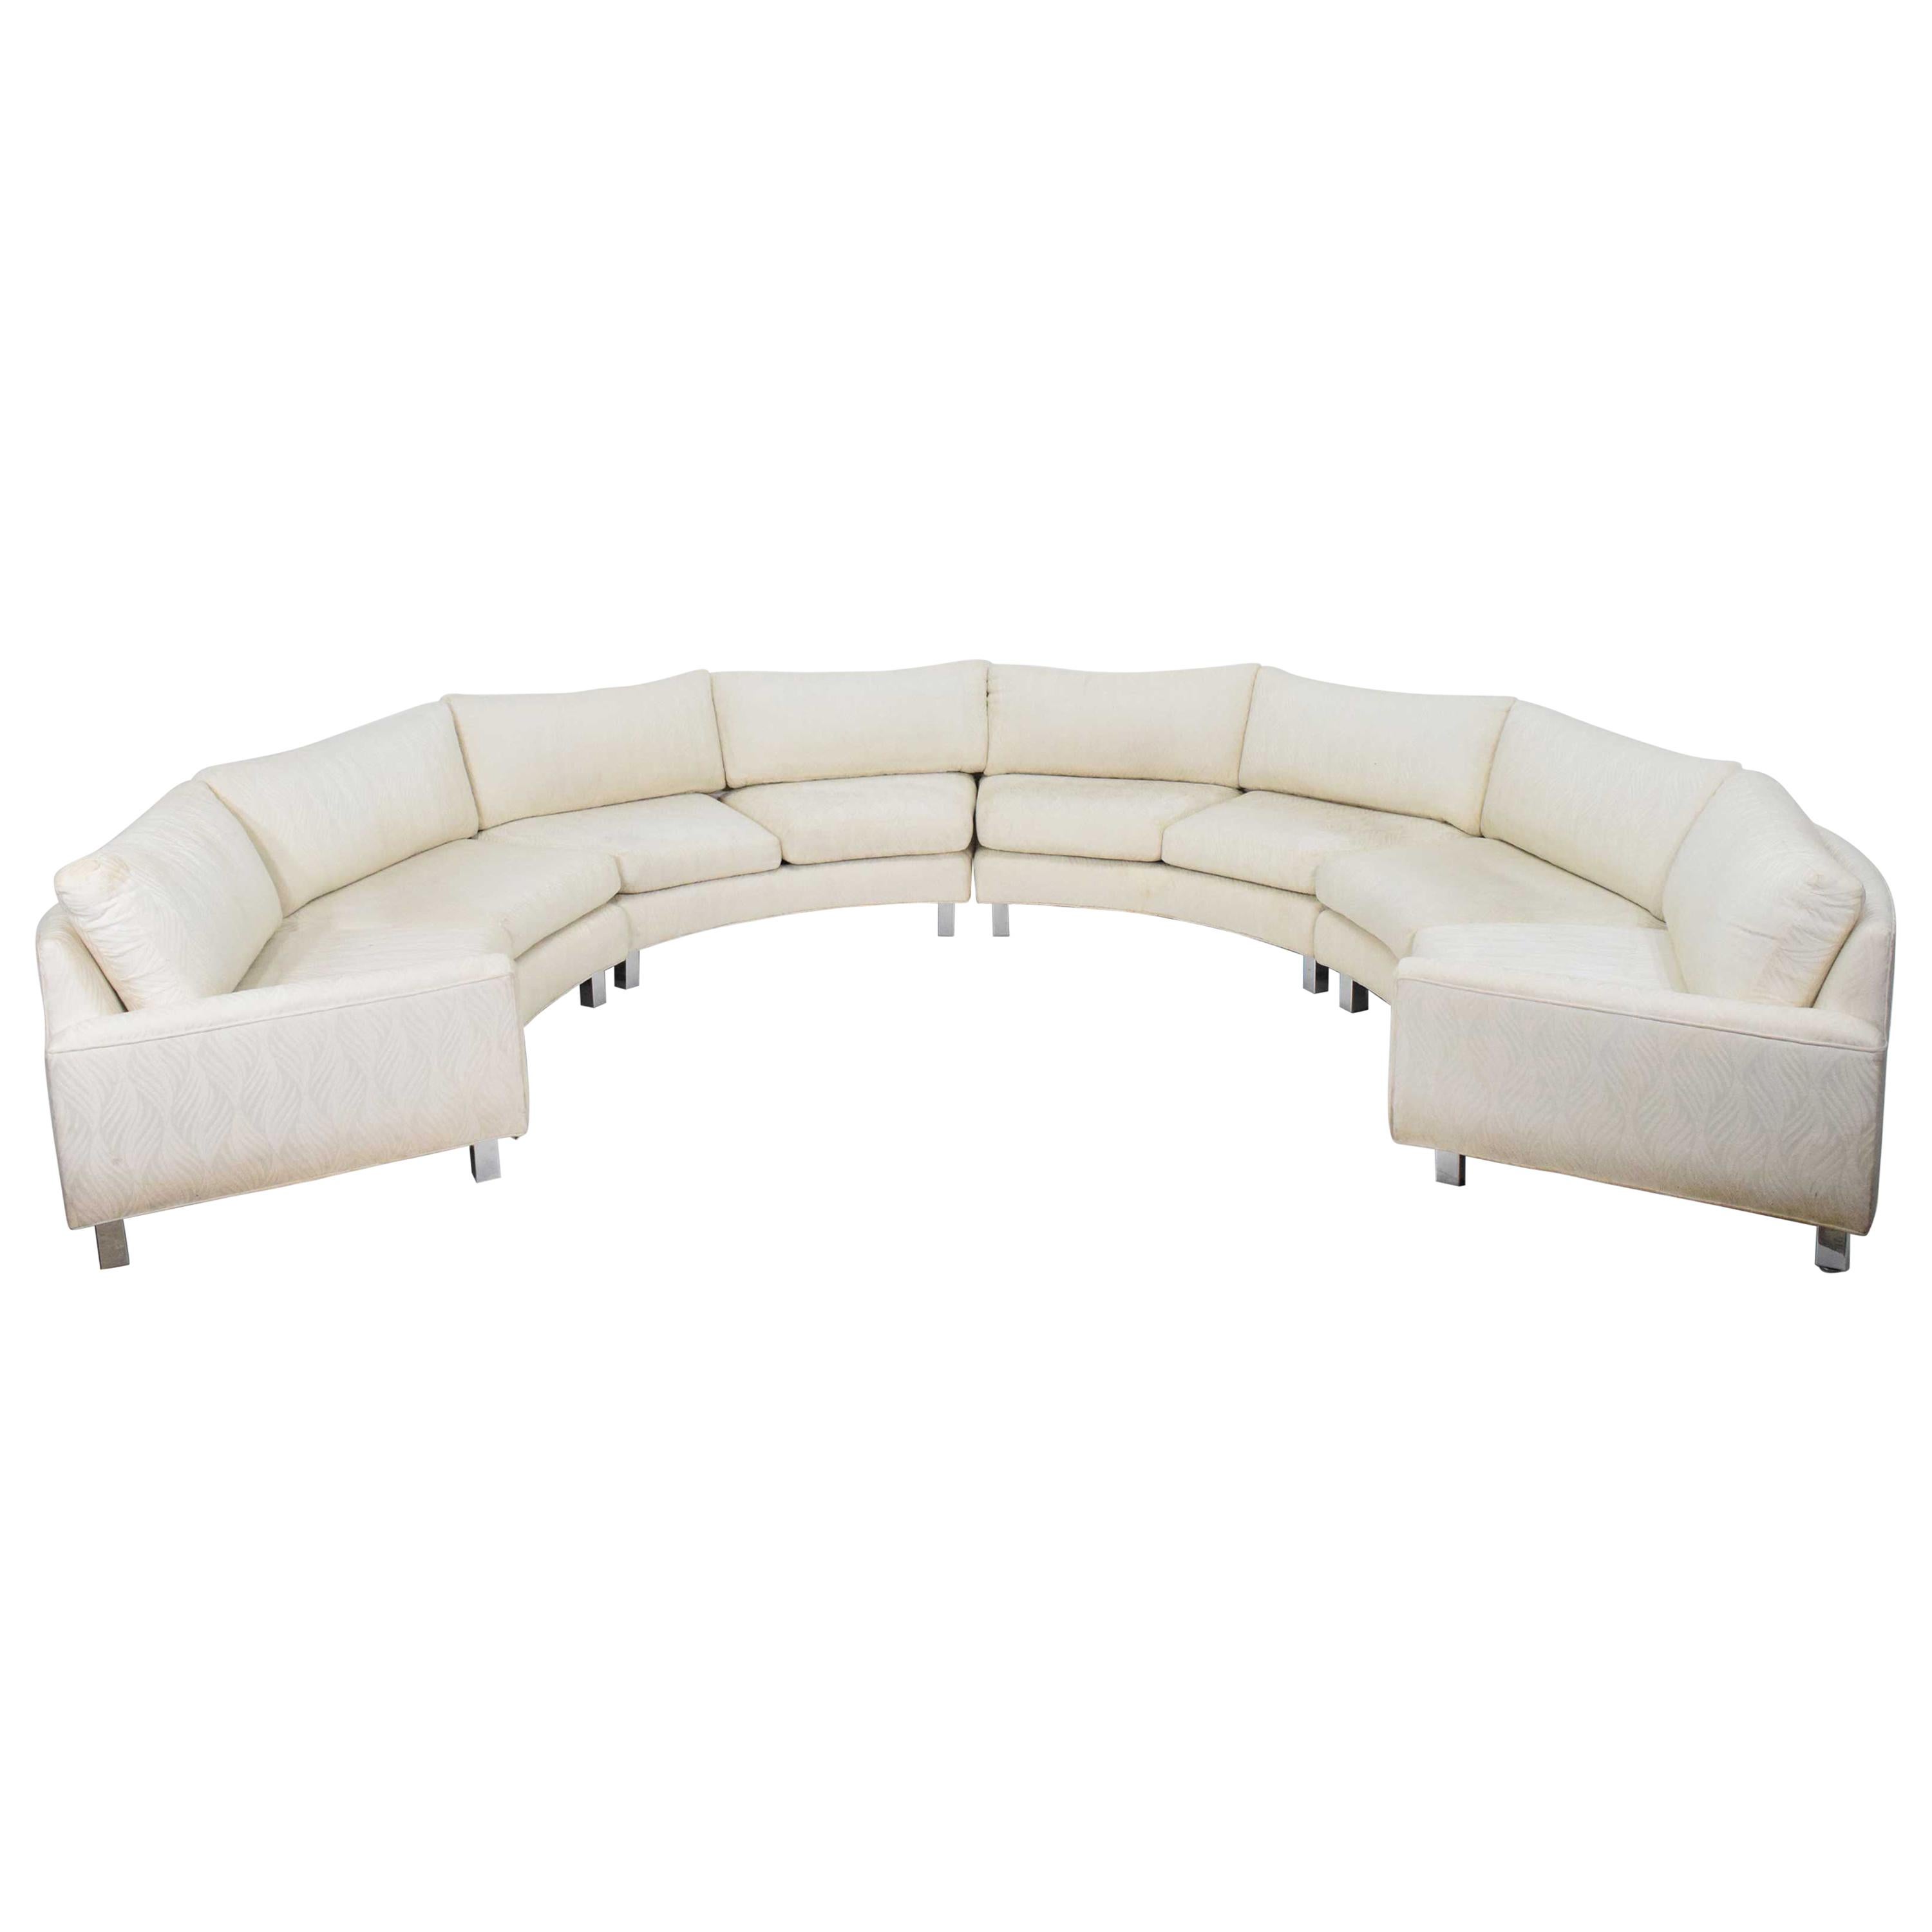 Milo Baughman Vierteiliges geschwungenes Sofa mit Sektion in Weiß